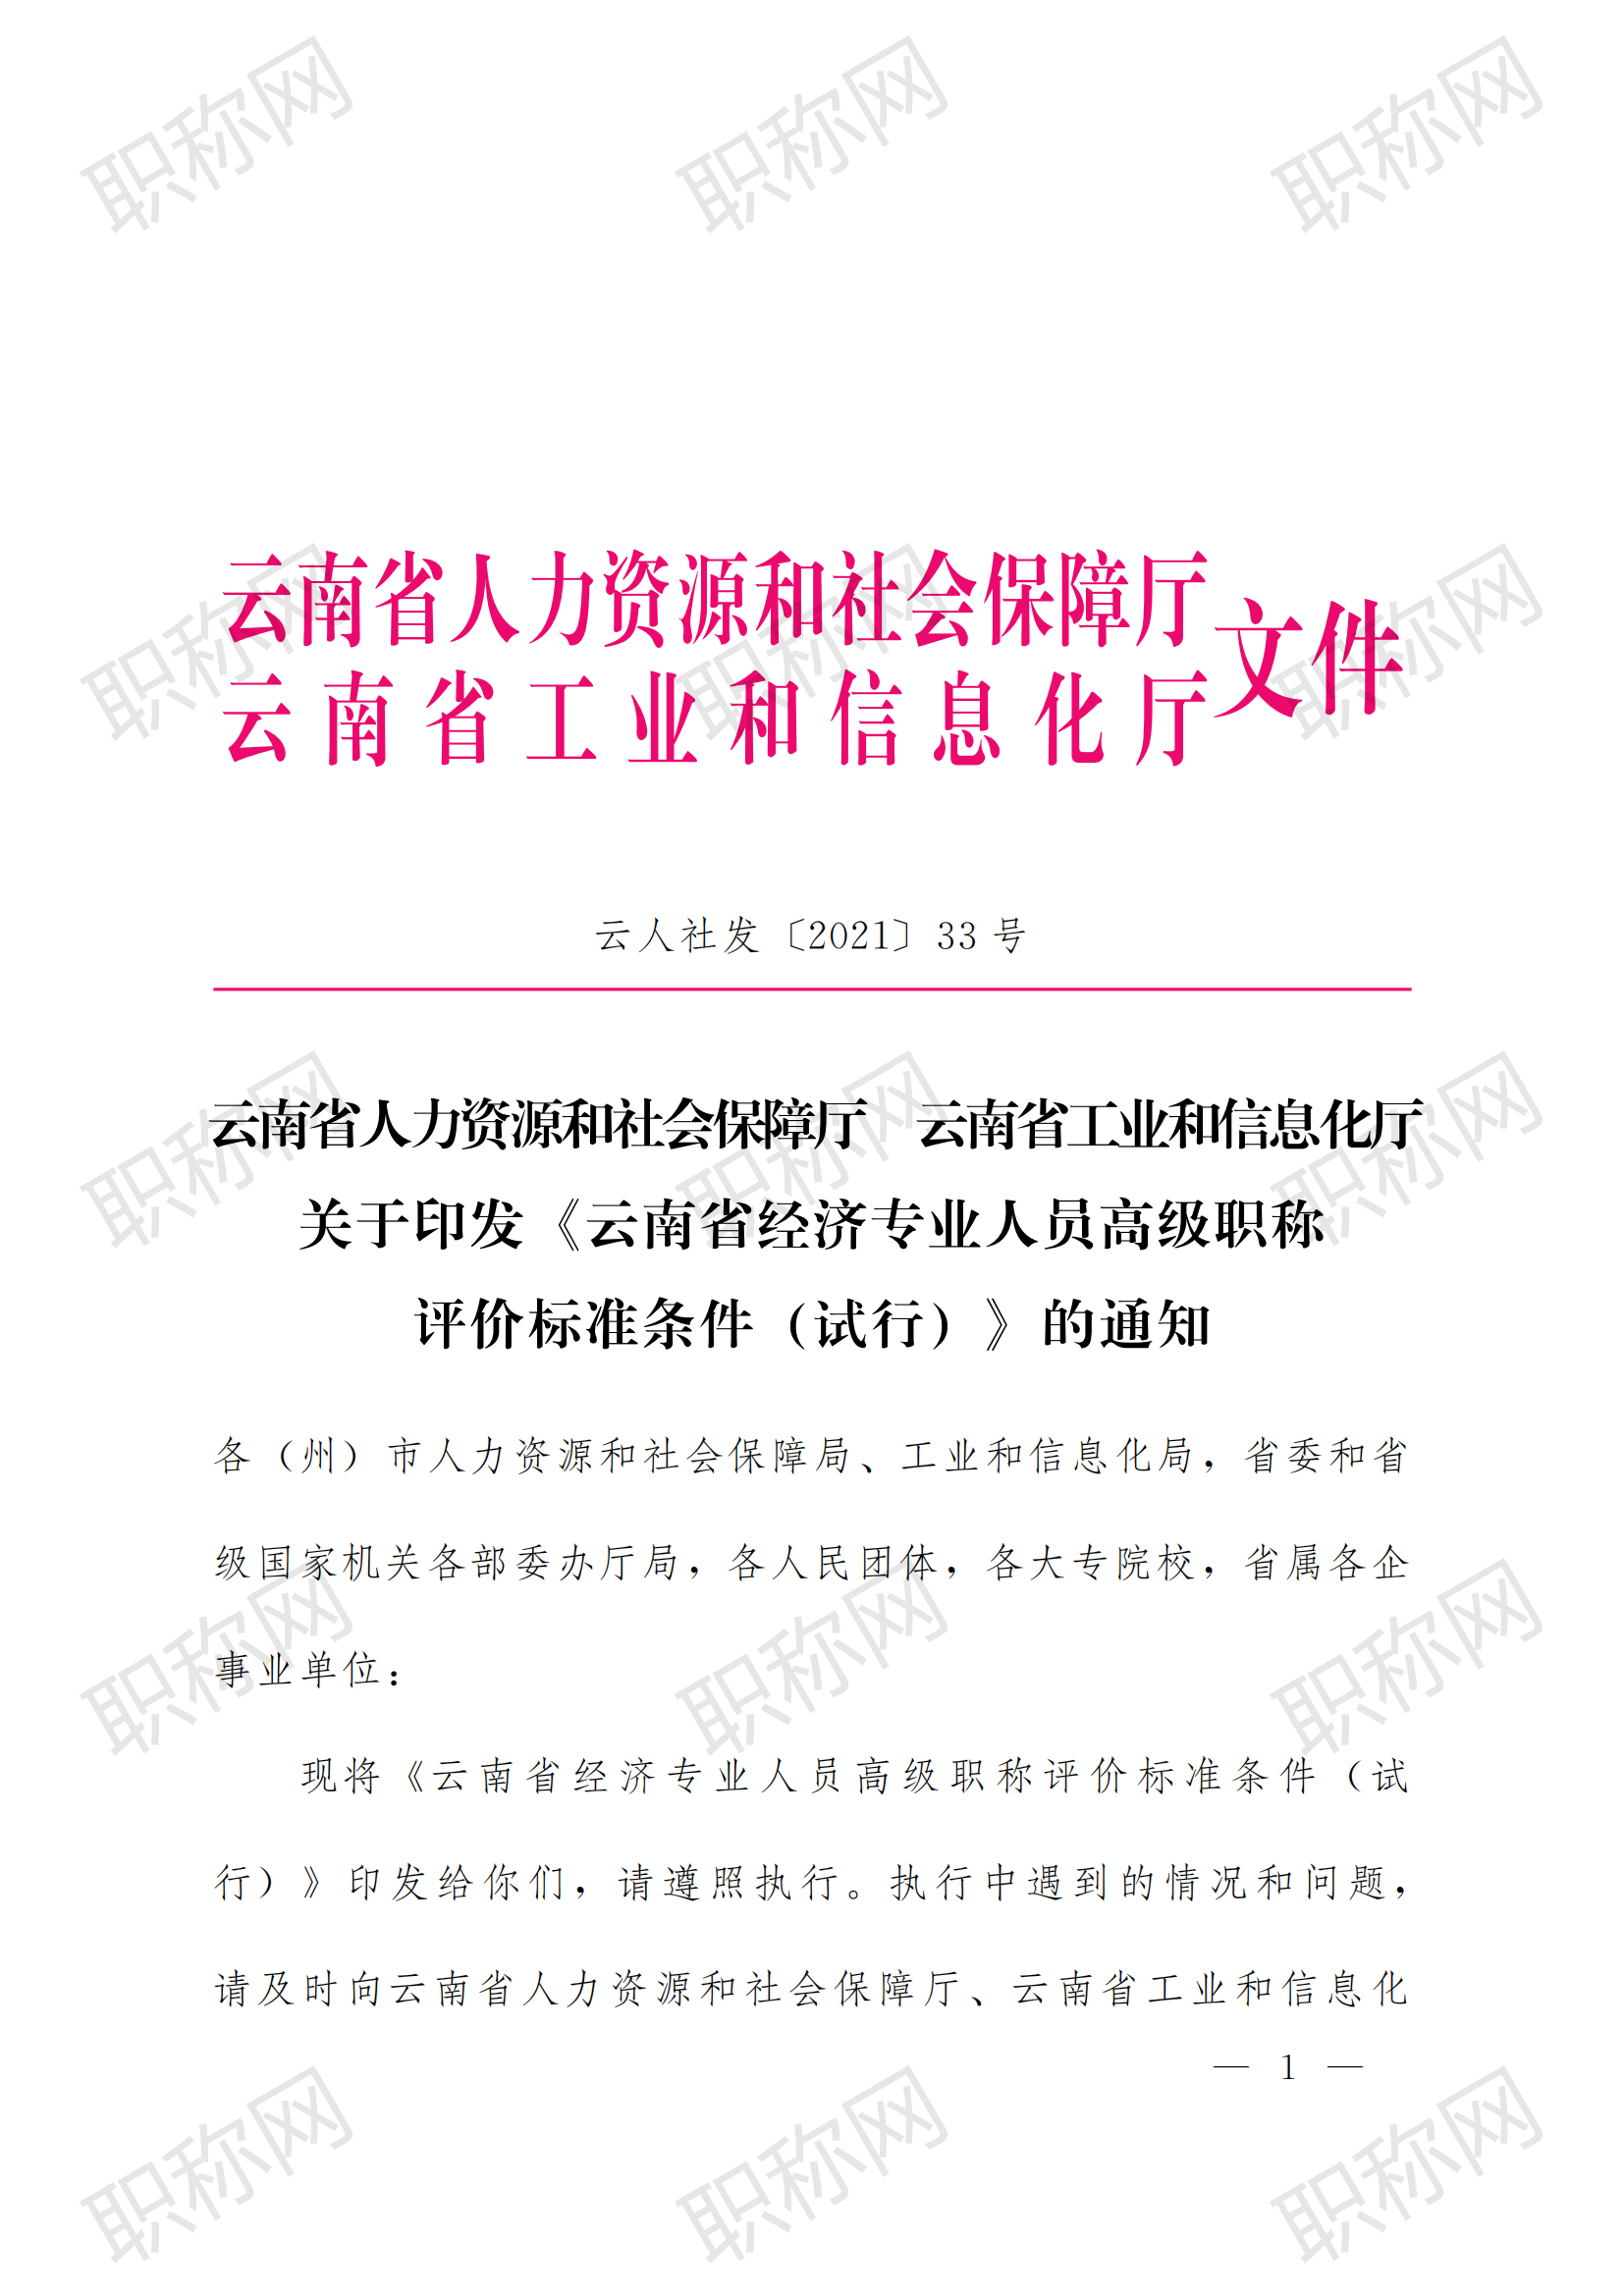 关于印发云南省经济专业人员高级职称评价标准条件 (试行)的通知_00.png